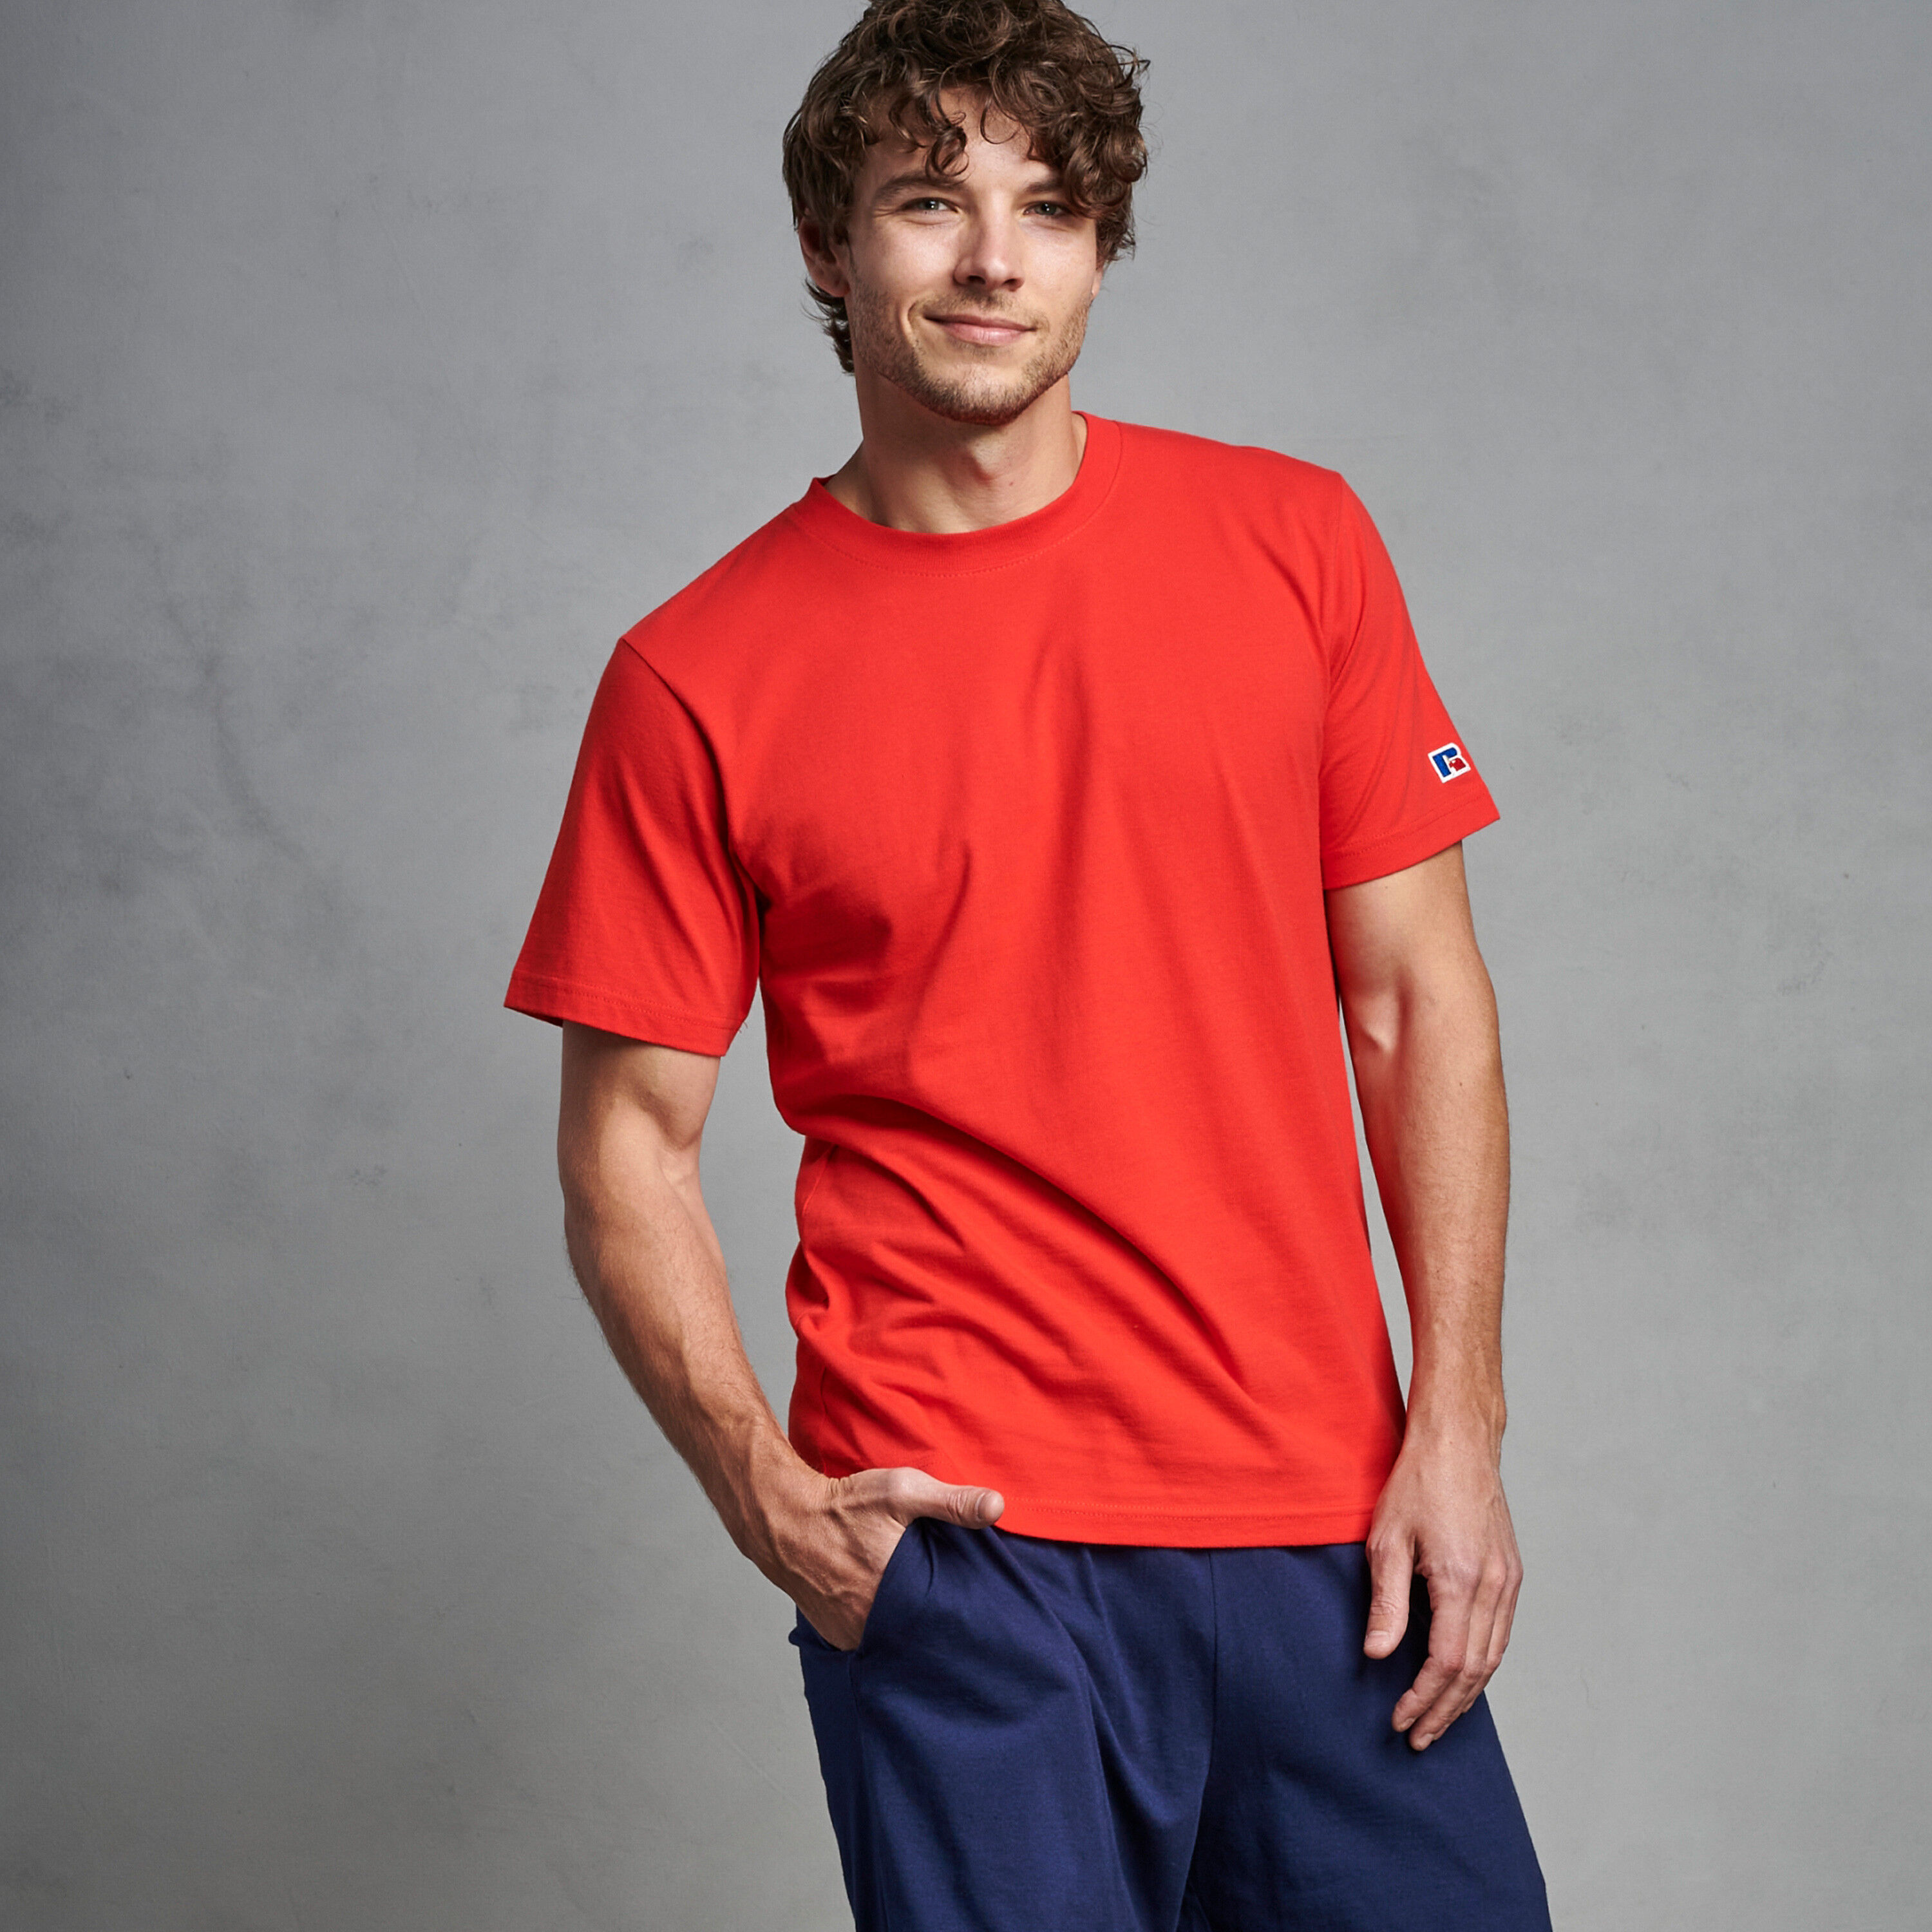 red t shirt mens fashion